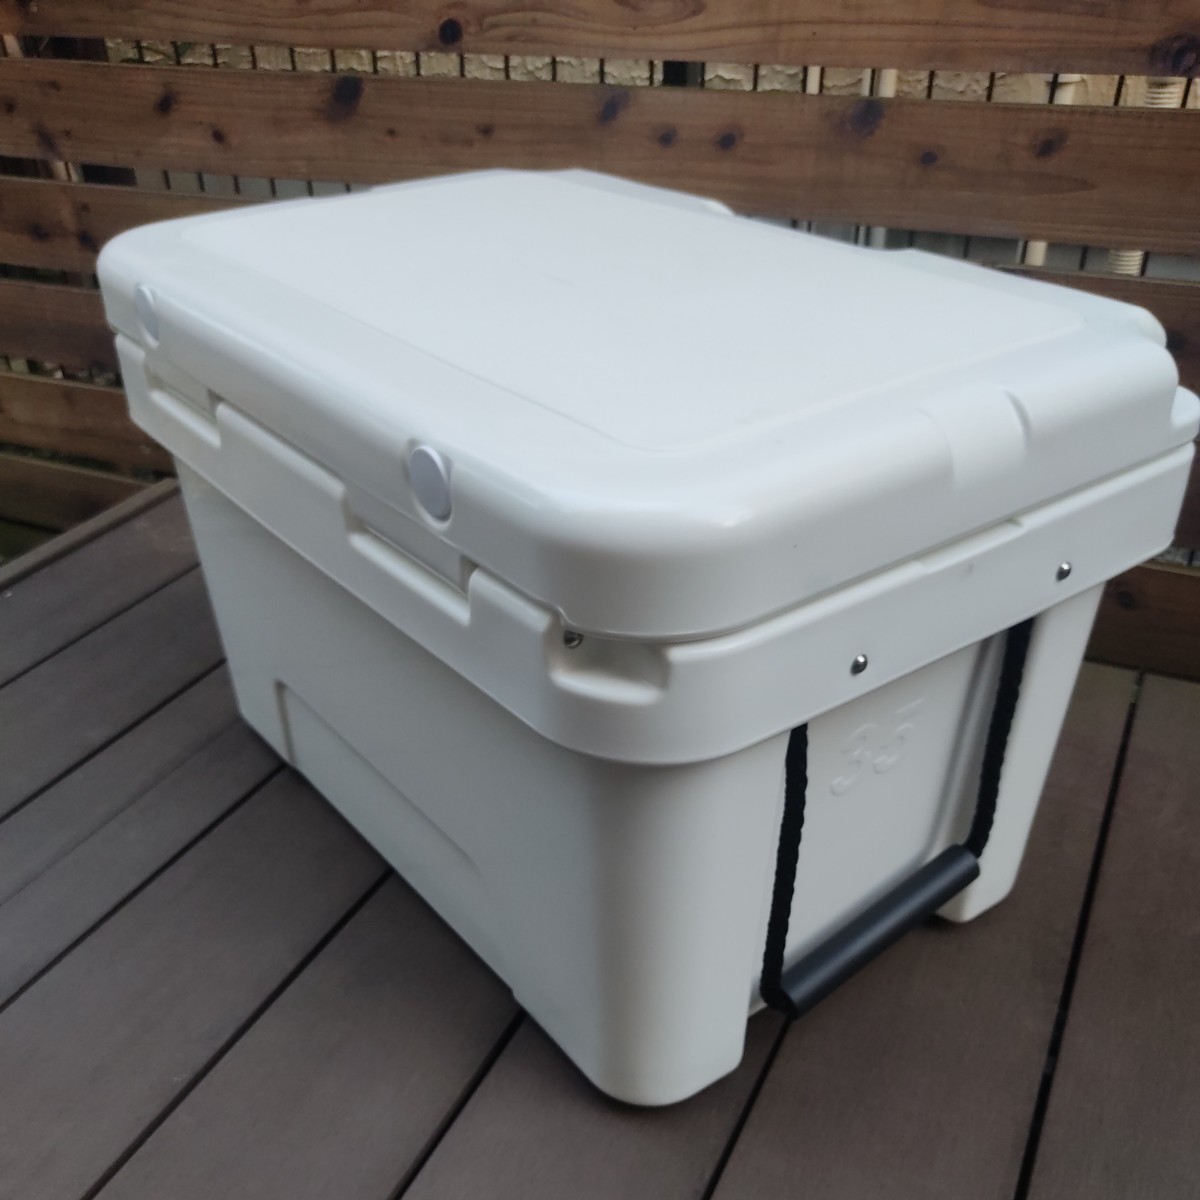  бесплатная доставка Highlander кемпинг для твердый cooler-box 35 литров белый термос ieti.